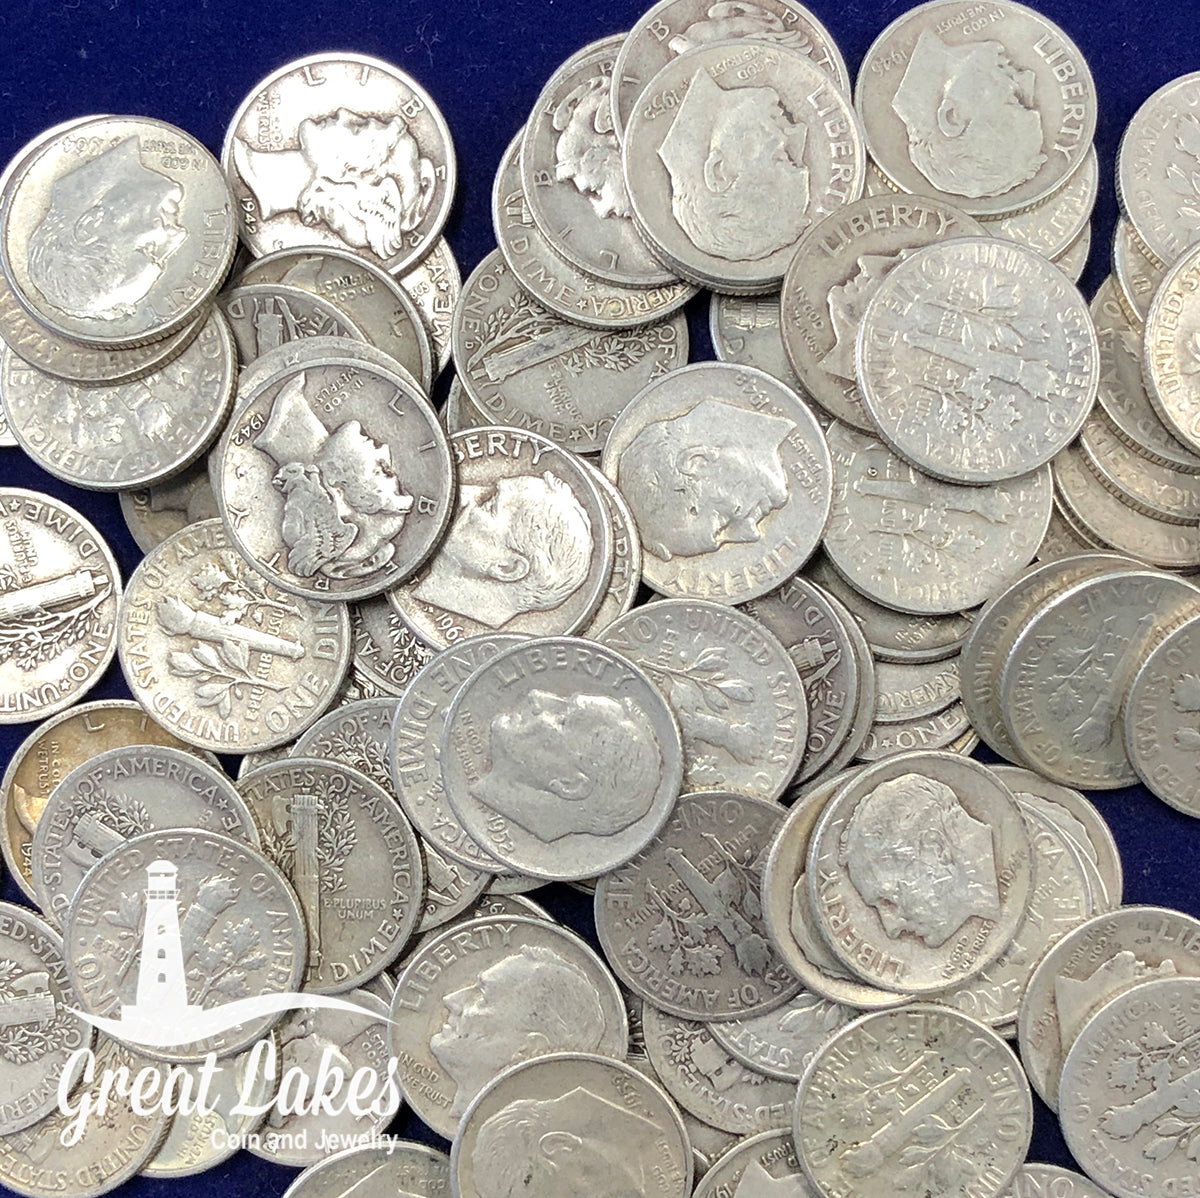 90% Silver Dimes - $5 FV (Roosevelt)